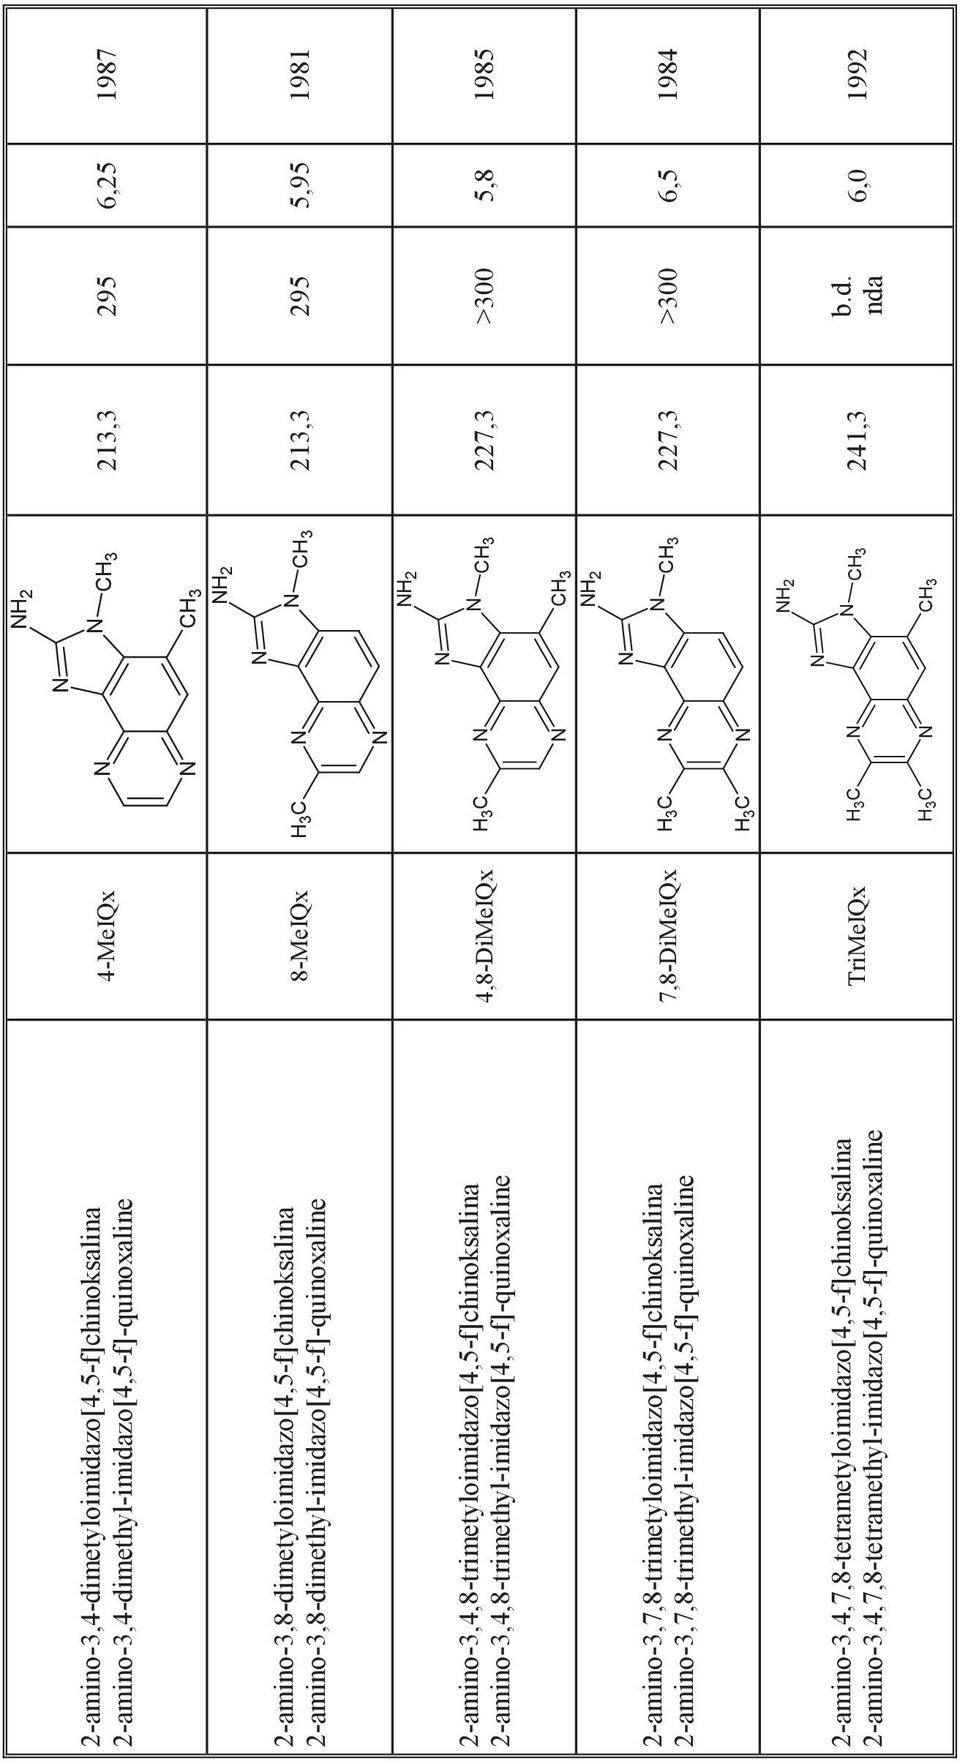 2-amino-3,7,8-trimetyloimidazo[4,5-f]chinoksalina 2-amino-3,7,8-trimethyl-imidazo[4,5-f]-quinoxaline 2-amino-3,4,7,8-tetrametyloimidazo[4,5-f]chinoksalina